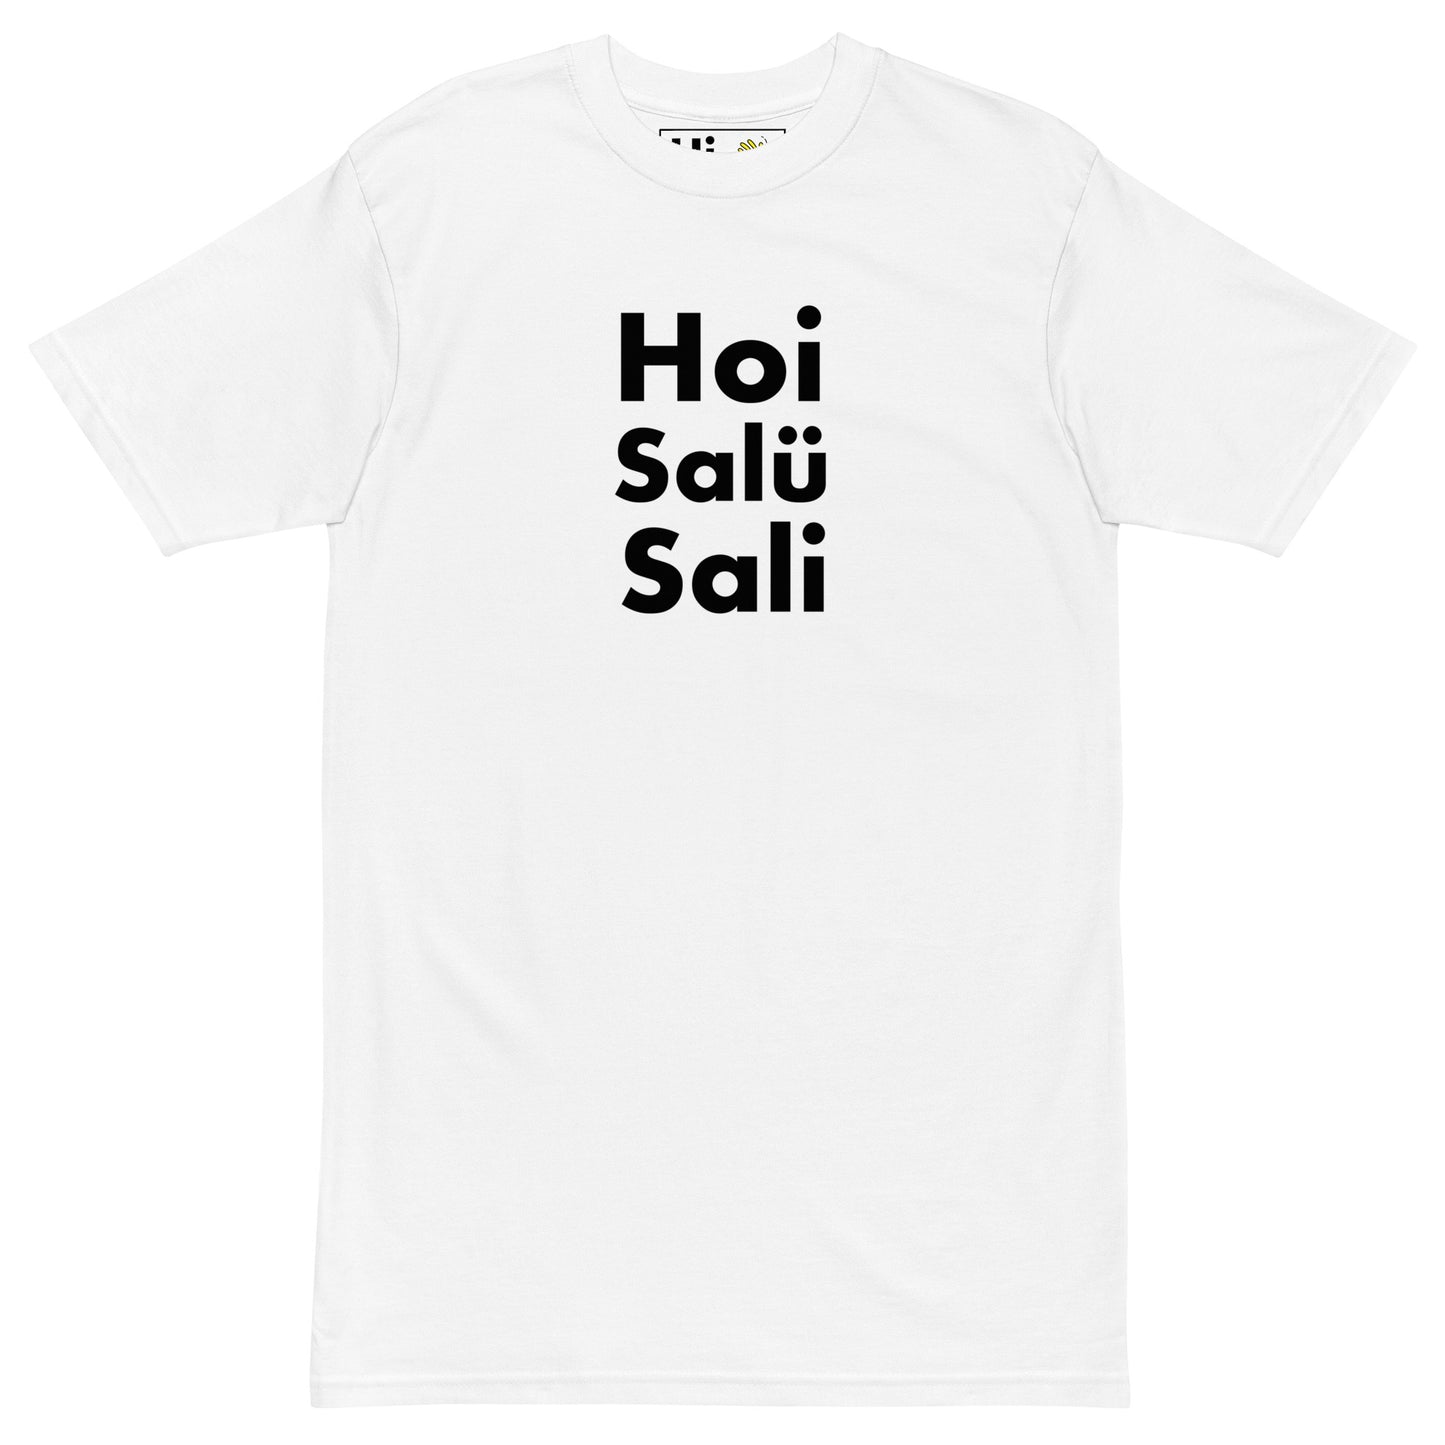 Hi Hoi Salü Sali Swiss German